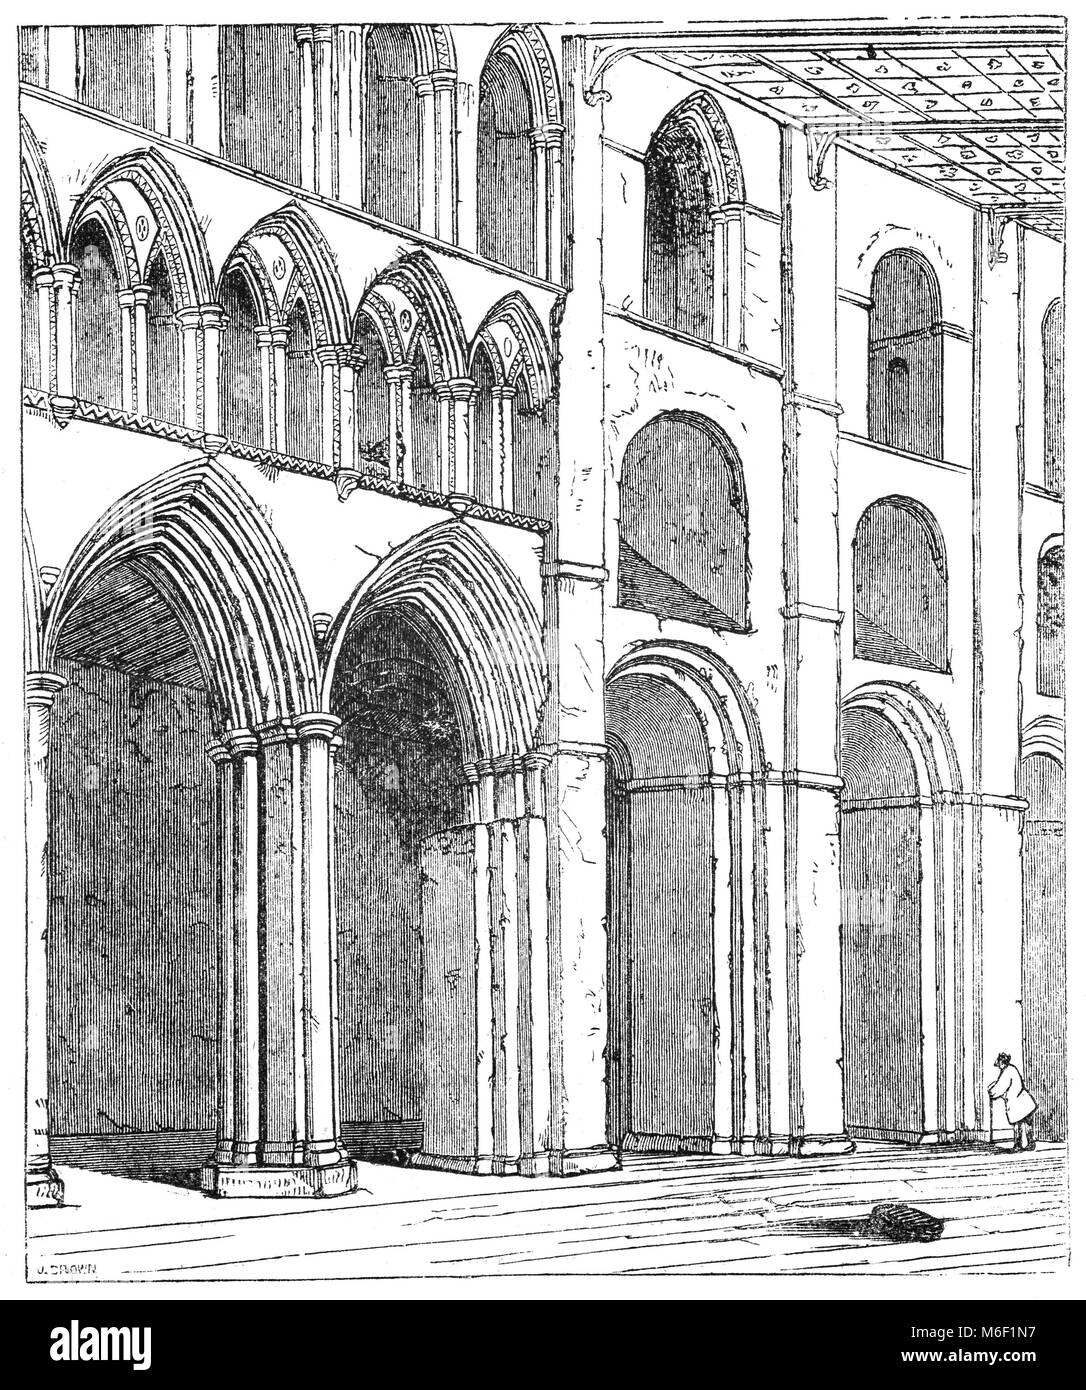 La nef de la cathédrale de St Albans, officiellement la cathédrale et l'église abbatiale de St Alban, et désigné localement sous le nom de 'l'Abbaye', a probablement été fondée au 8ème siècle, le bâtiment actuel est l'architecture romane normande du 11e siècle, avec des groupes et des ajouts du 19ème siècle. Il a cessé d'être une abbaye au 16e siècle et est devenue une cathédrale en 1877. St Alban's, Hertfordshire, Angleterre. Banque D'Images